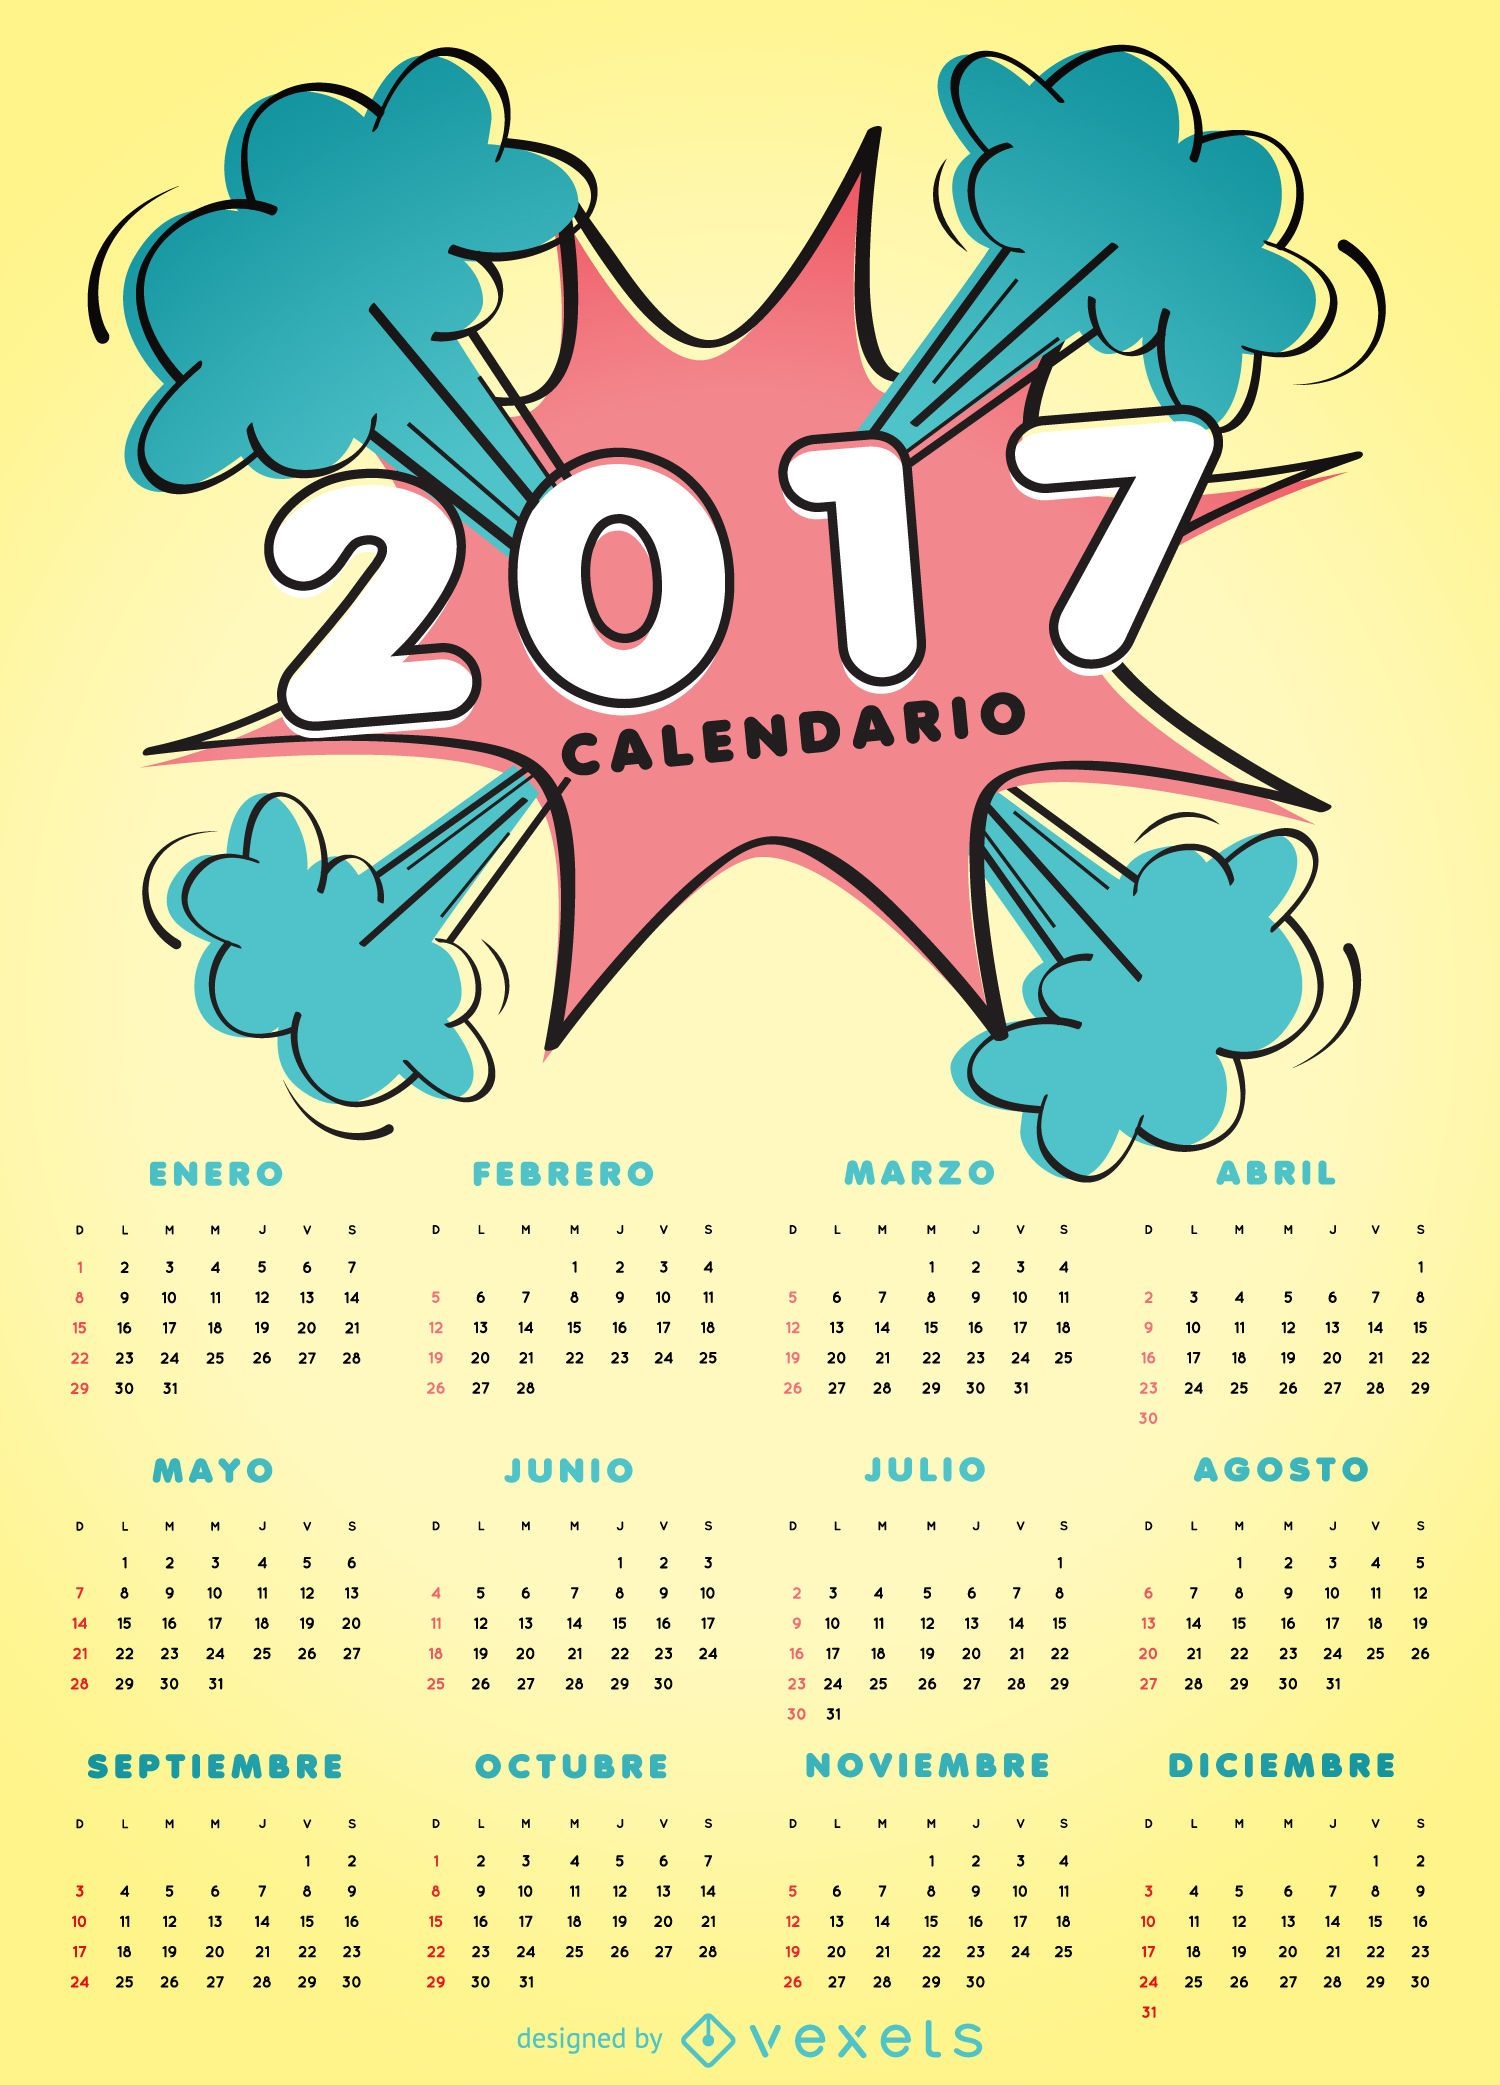 2017 comic style calendar in Spanish